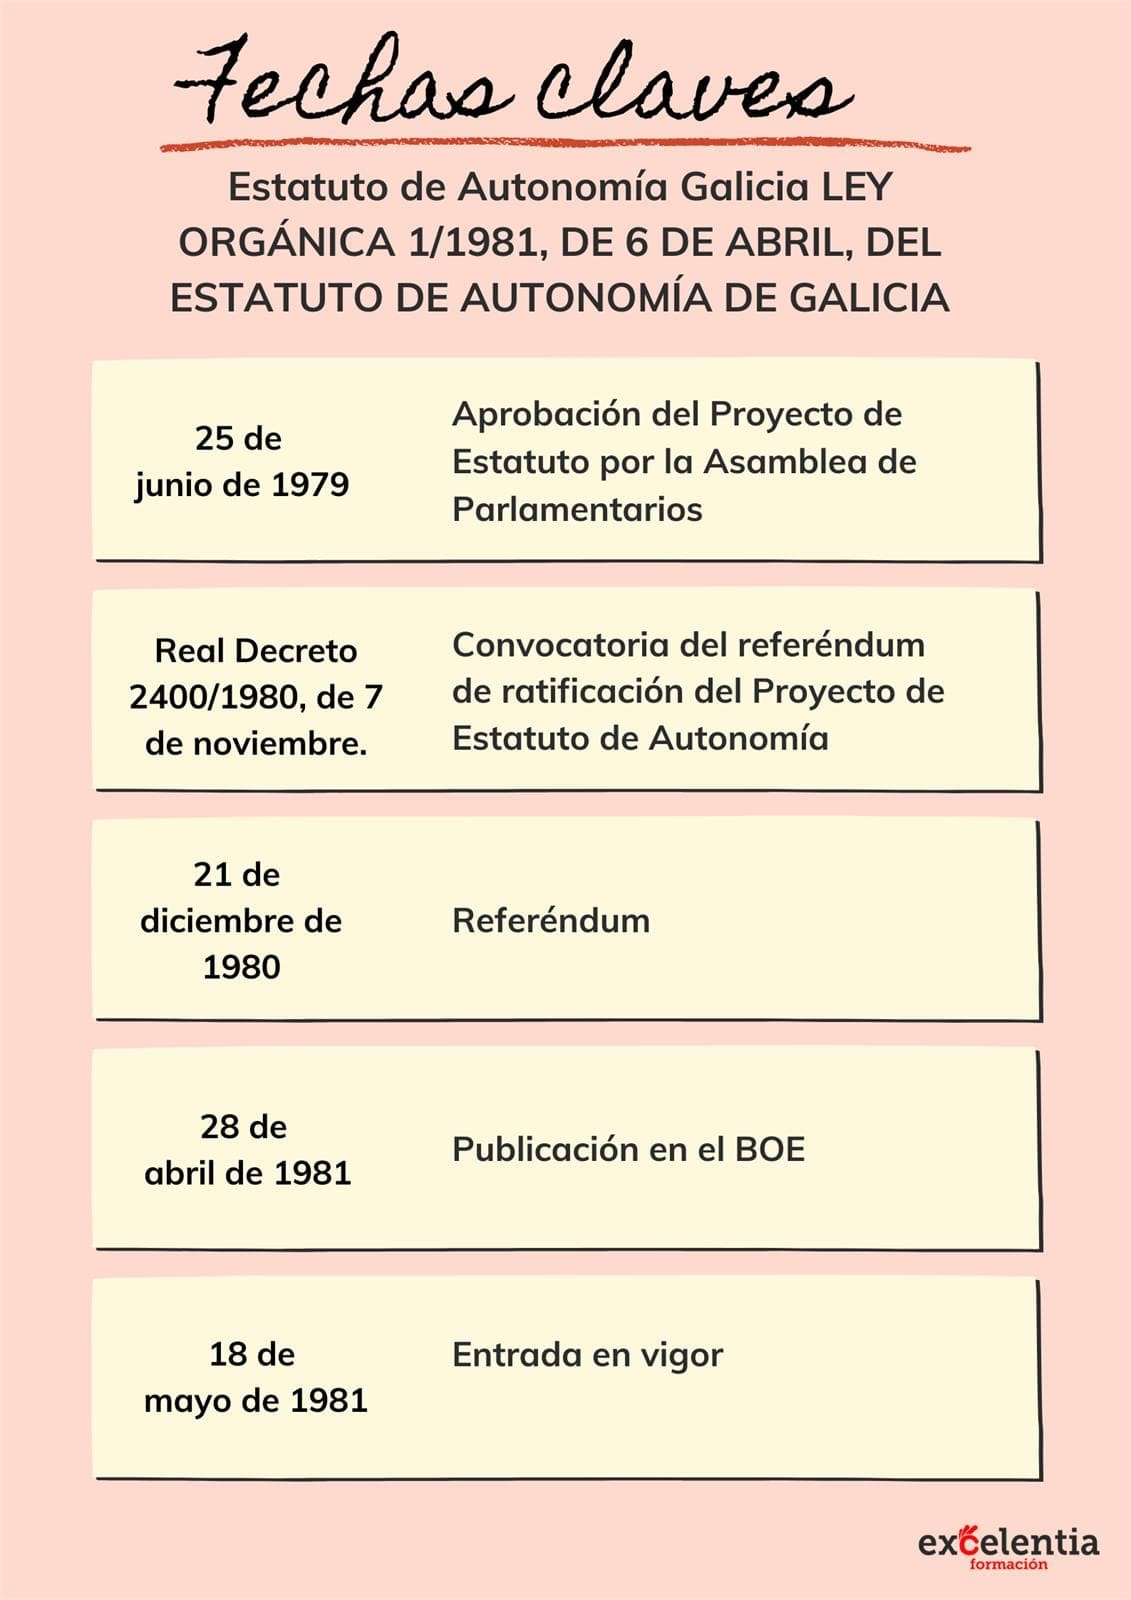 Esquema fechas claves - Estatuto de Autonomía de Galicia  - Imagen 1